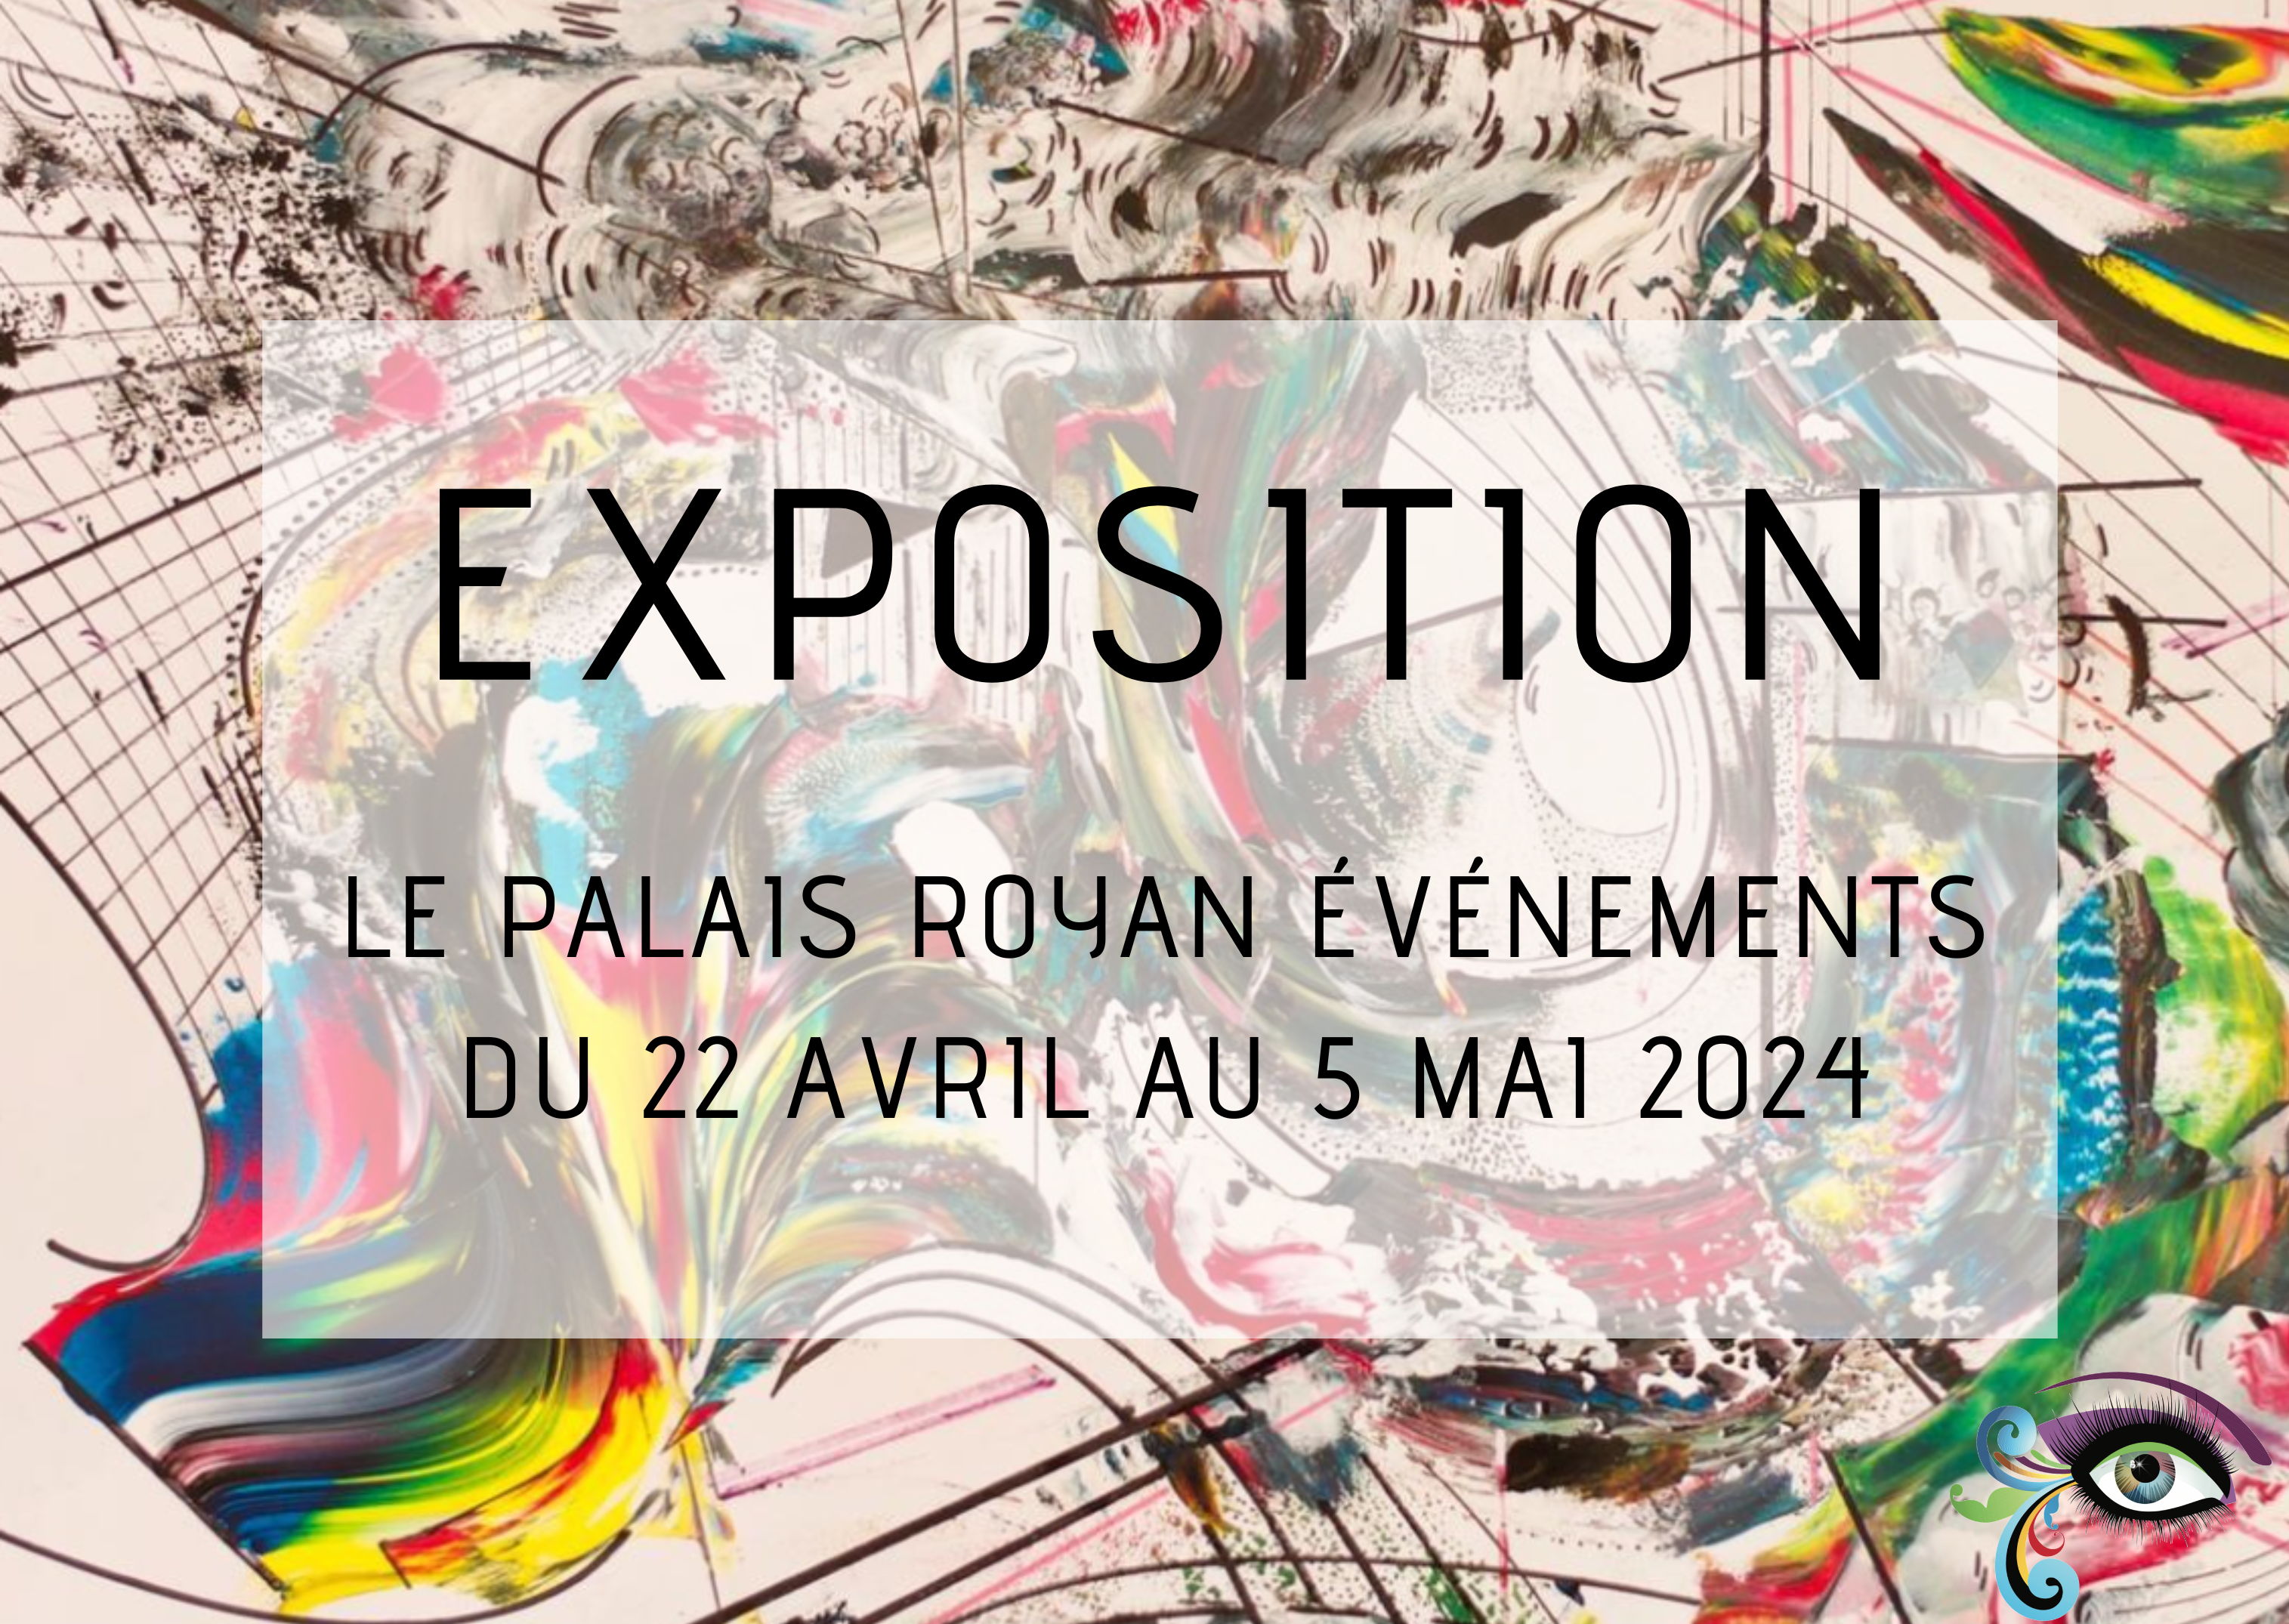 Exposition au Palais Royan Evénement du 22 avril au 5 mai